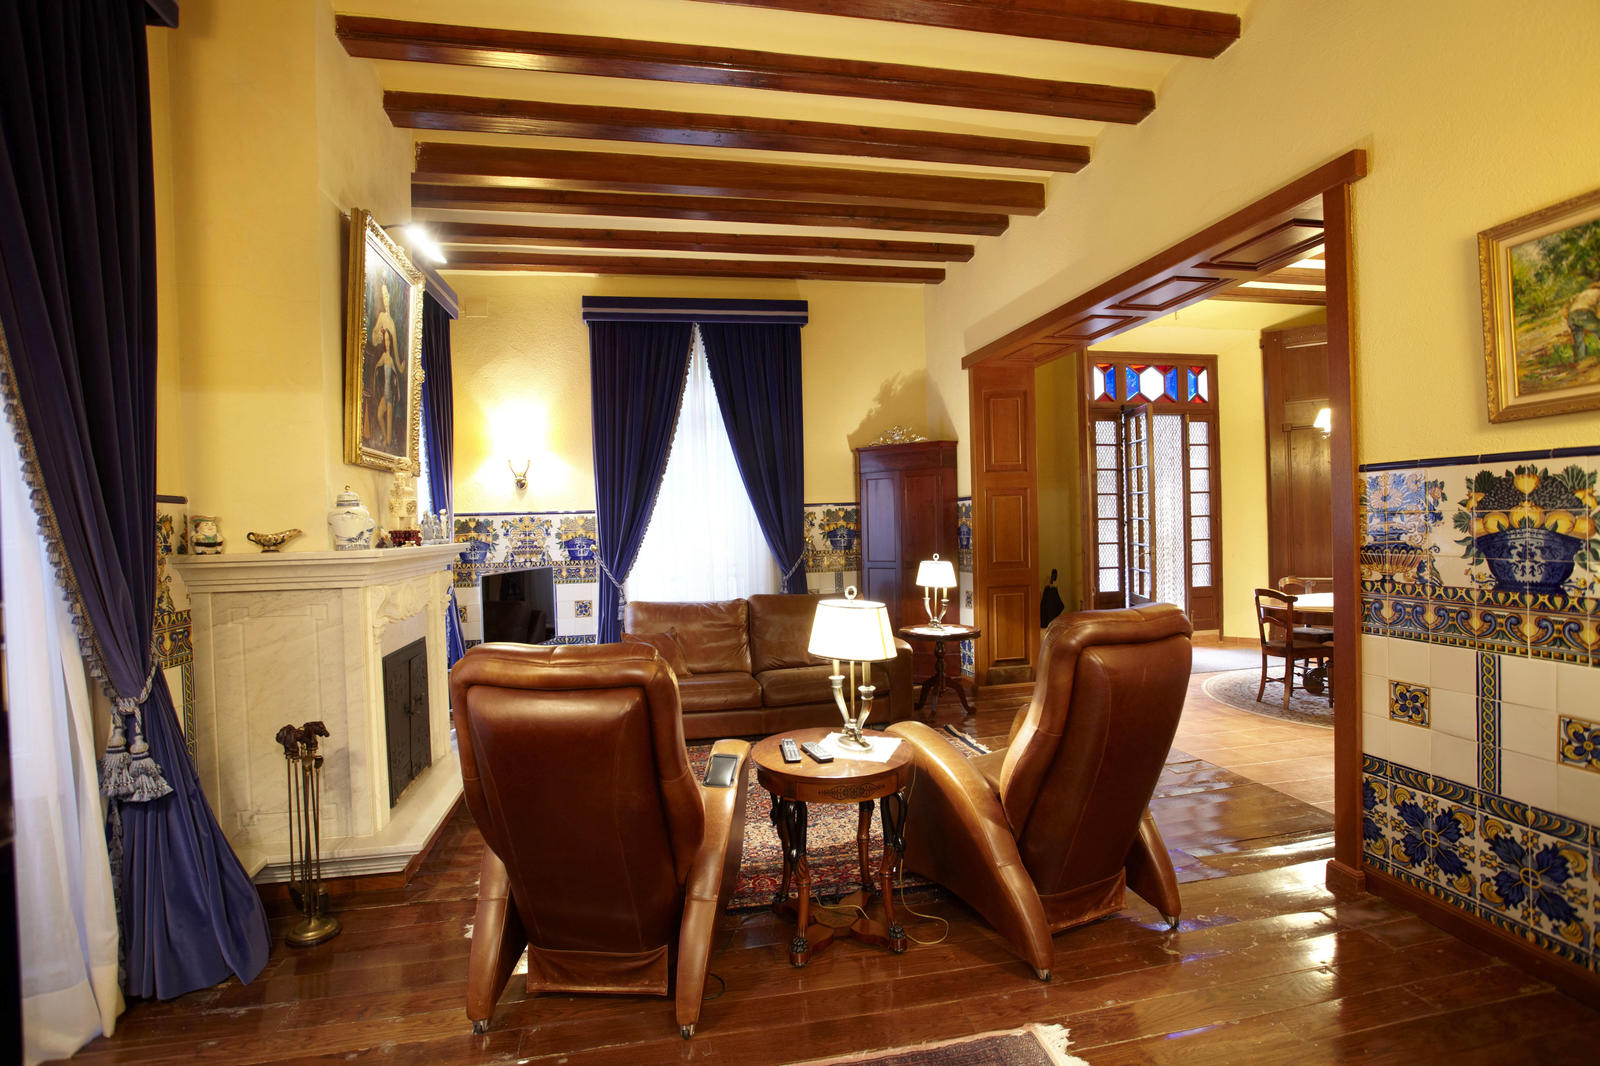 Spektakuläre modernistische Villa in La Garriga mit großem Anwesen